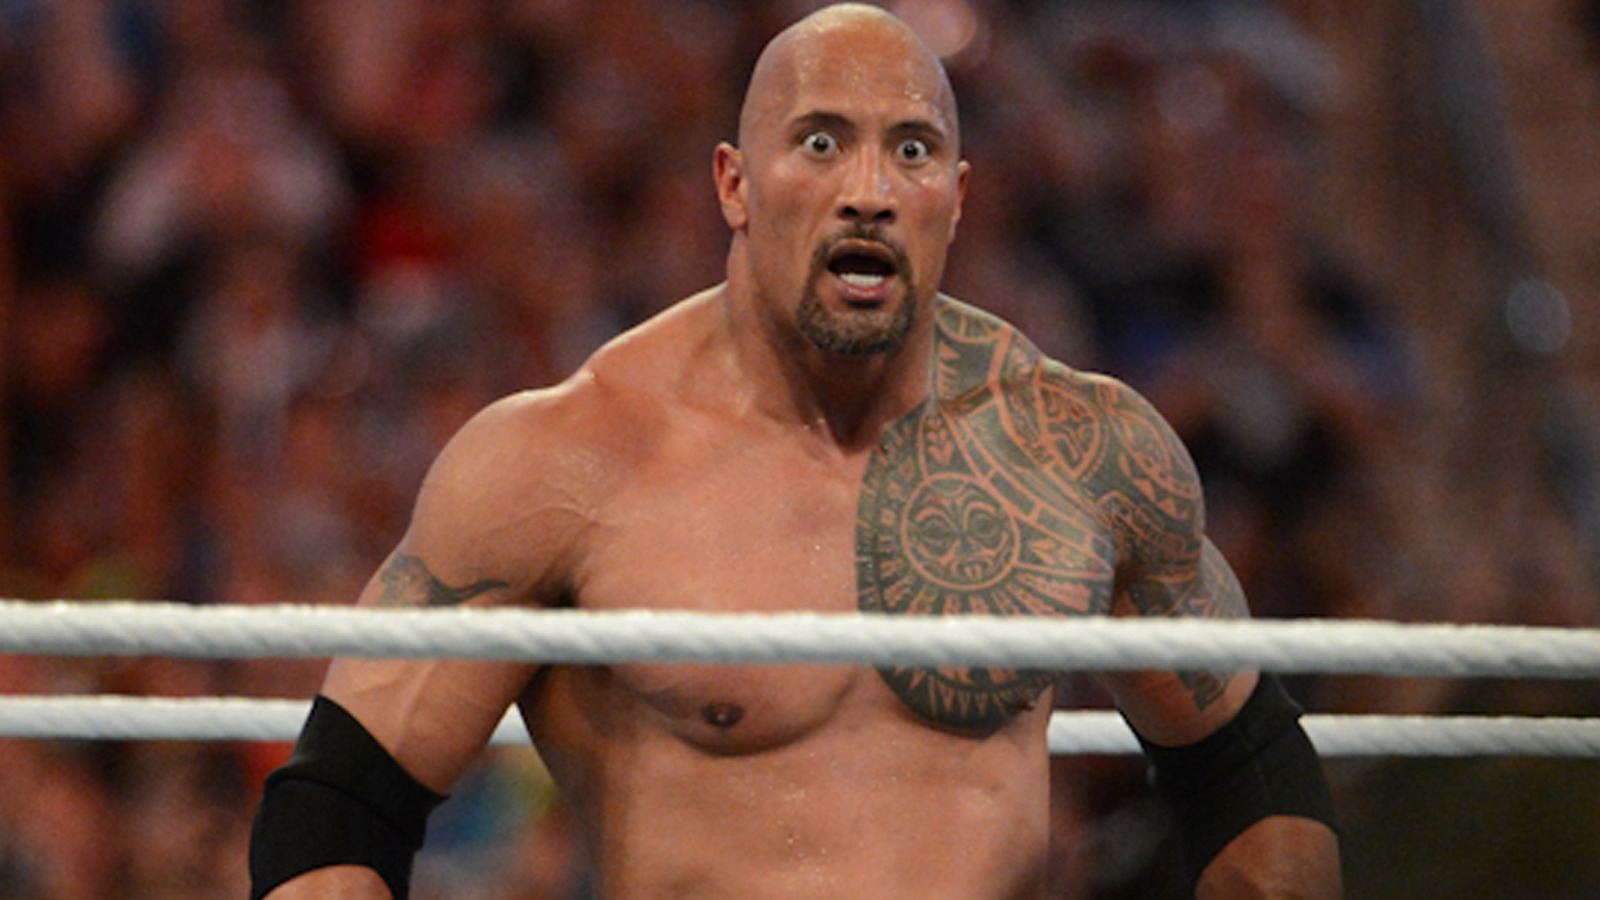 El 70% de los fanáticos quieren que The Rock se enfrente a un oponente específico si regresa al ring en la WWE